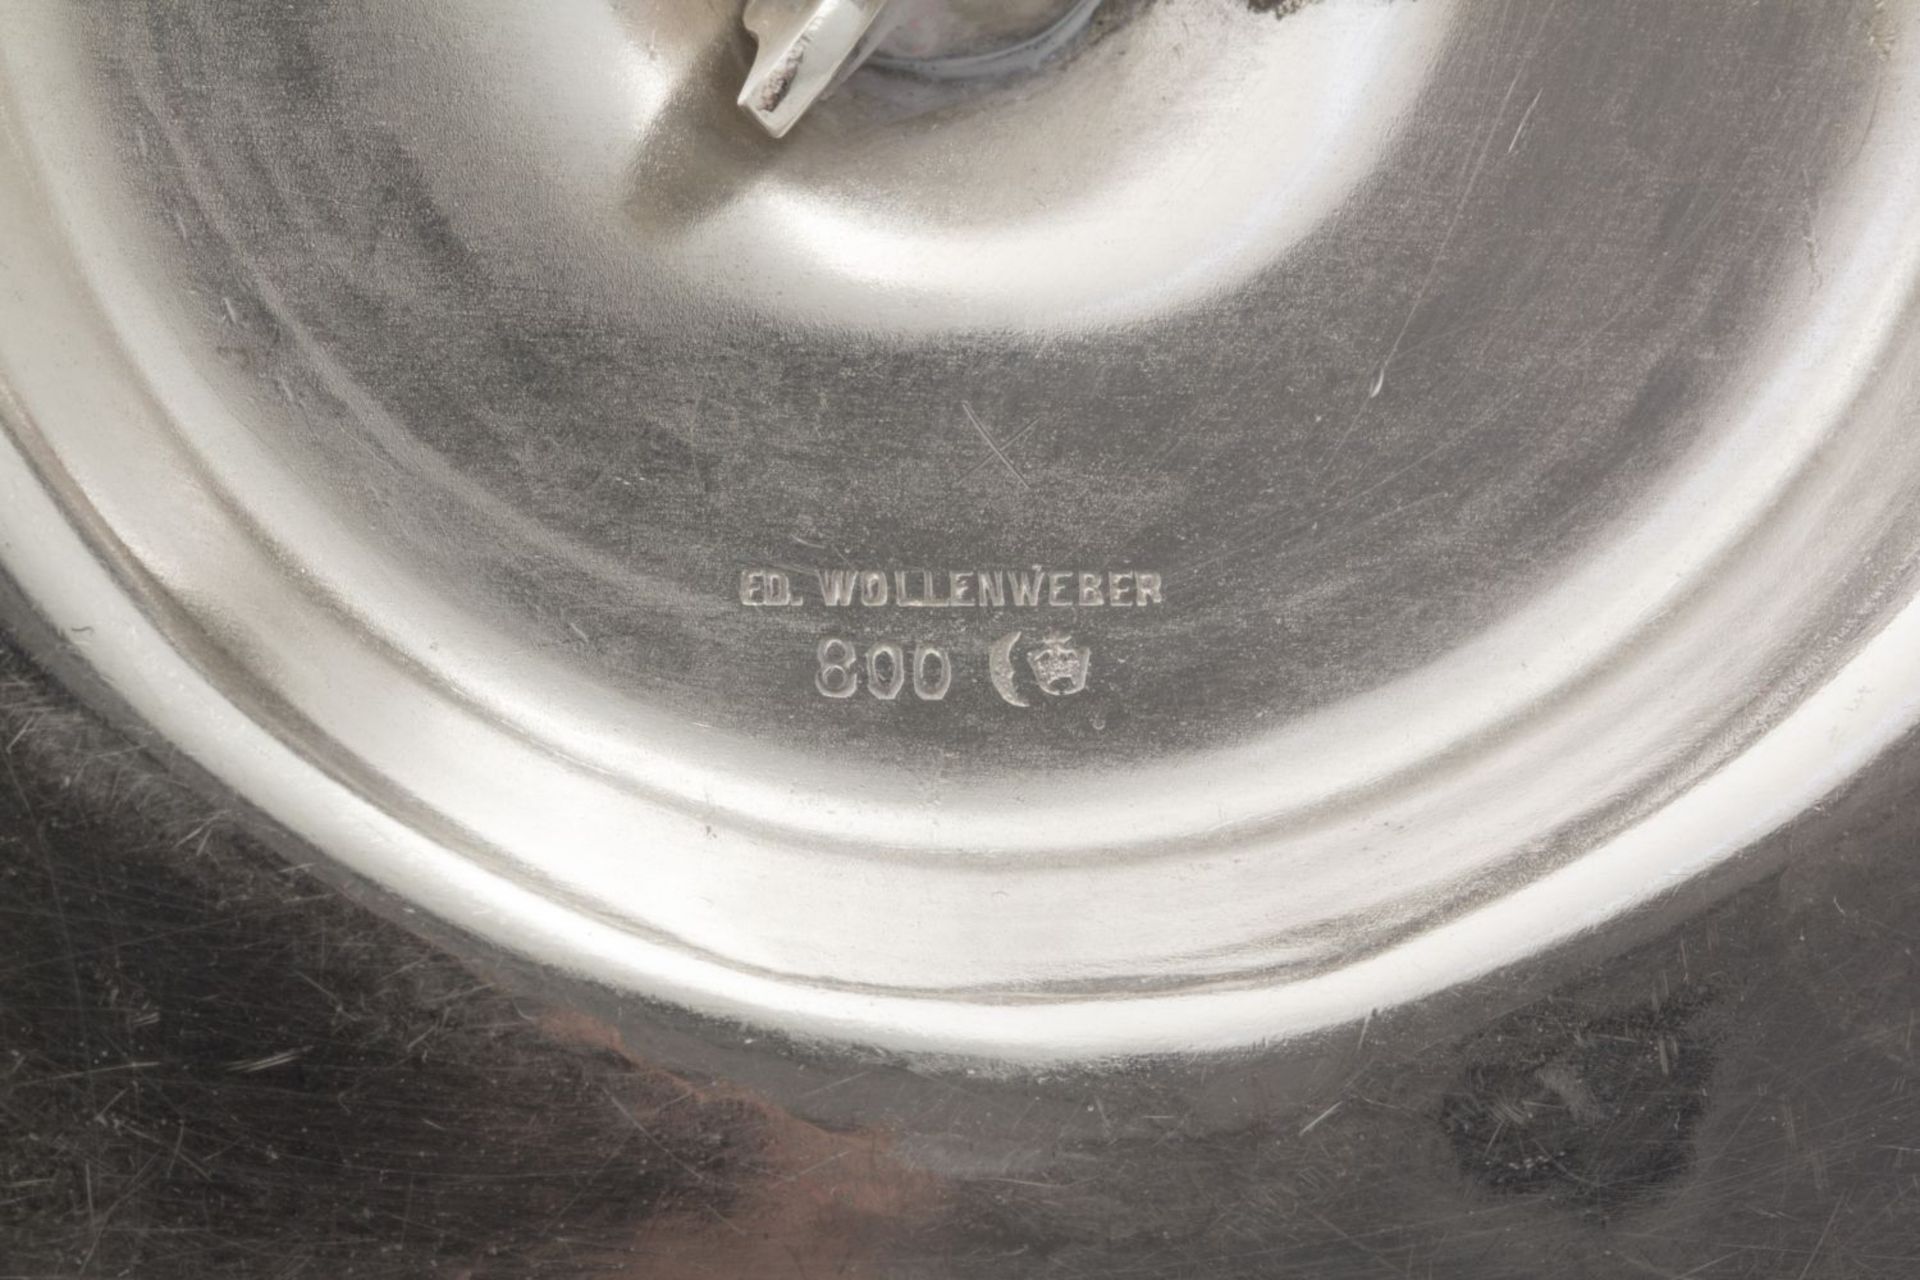 Sauciere auf Presentoir Silber 800, innen vergoldet. Passiger profilierter Rand. Firmensignet. Ed. W - Image 2 of 2